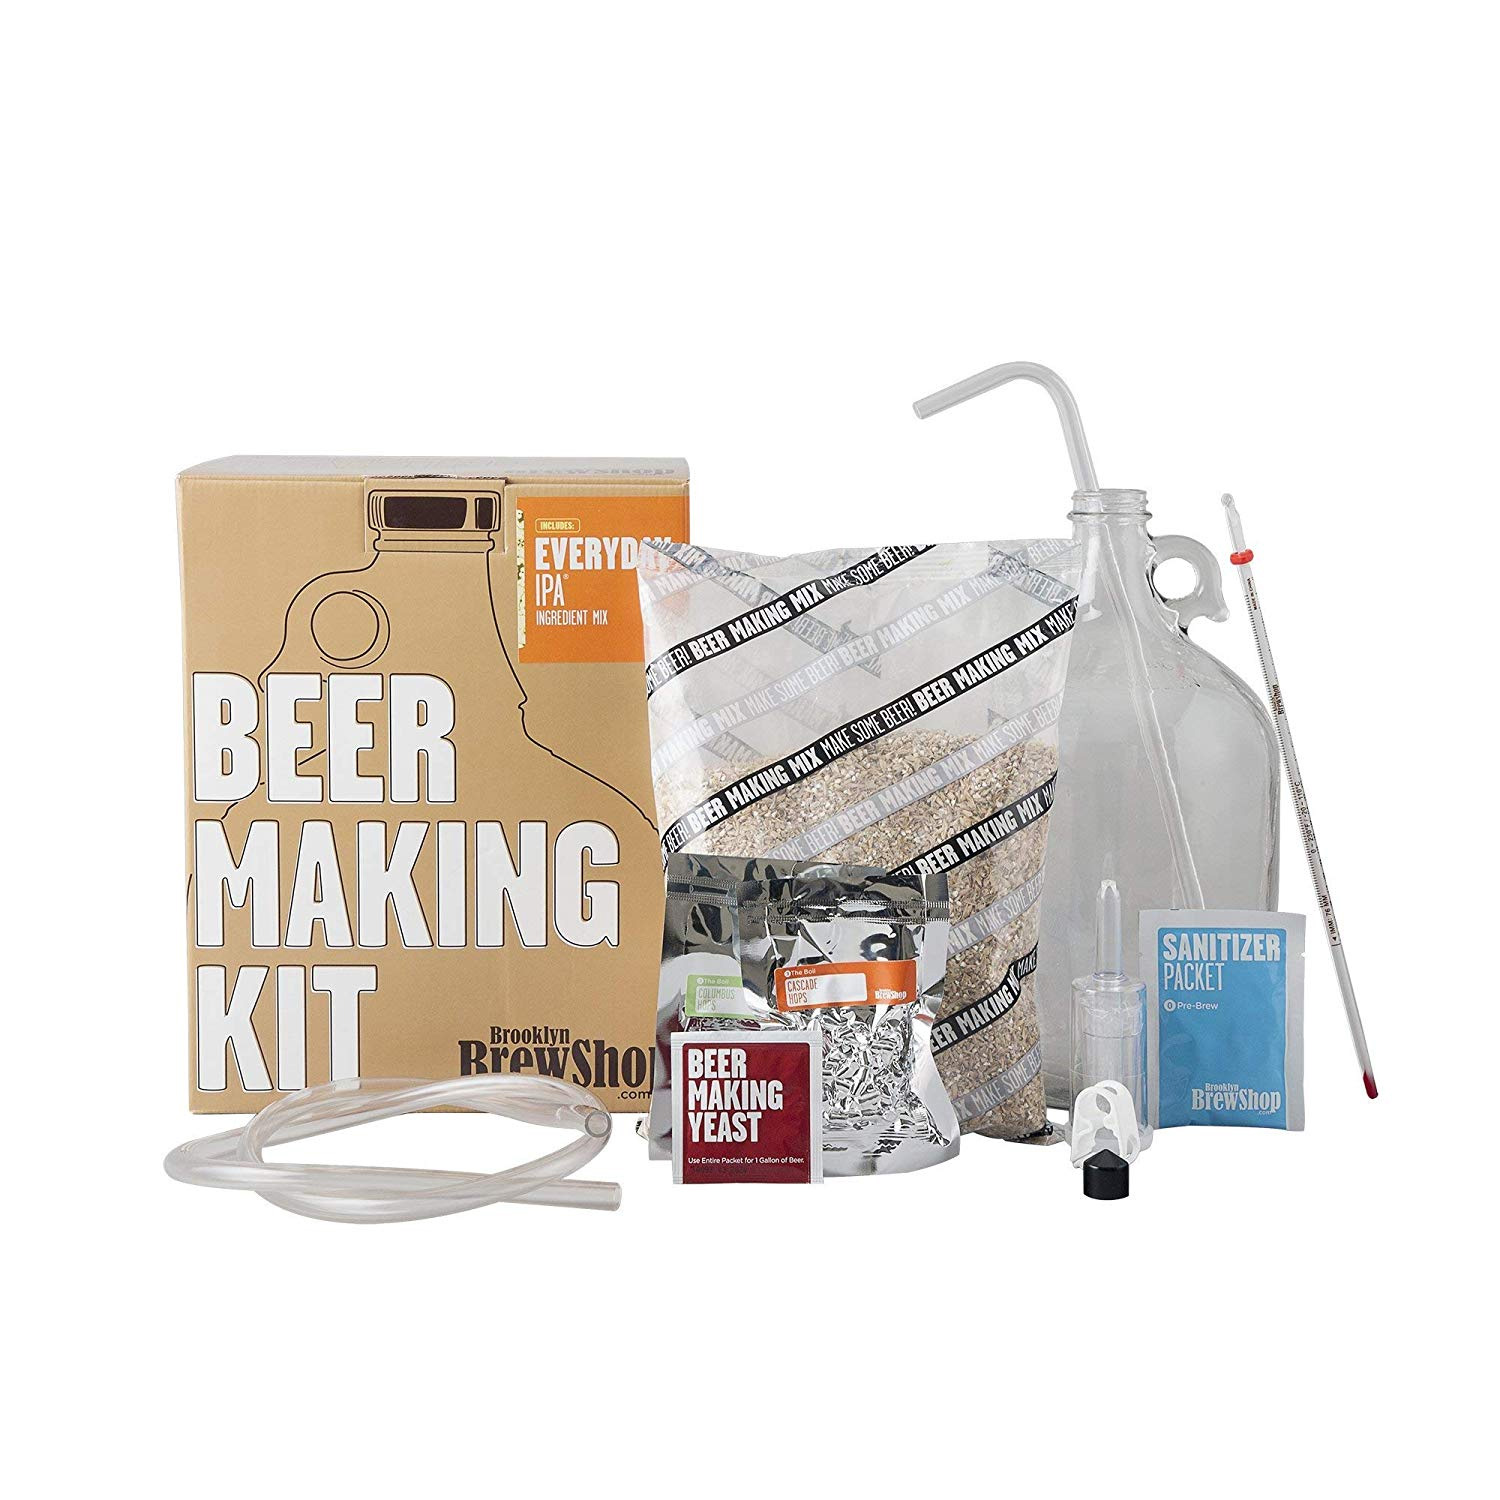 IPA beer making kit